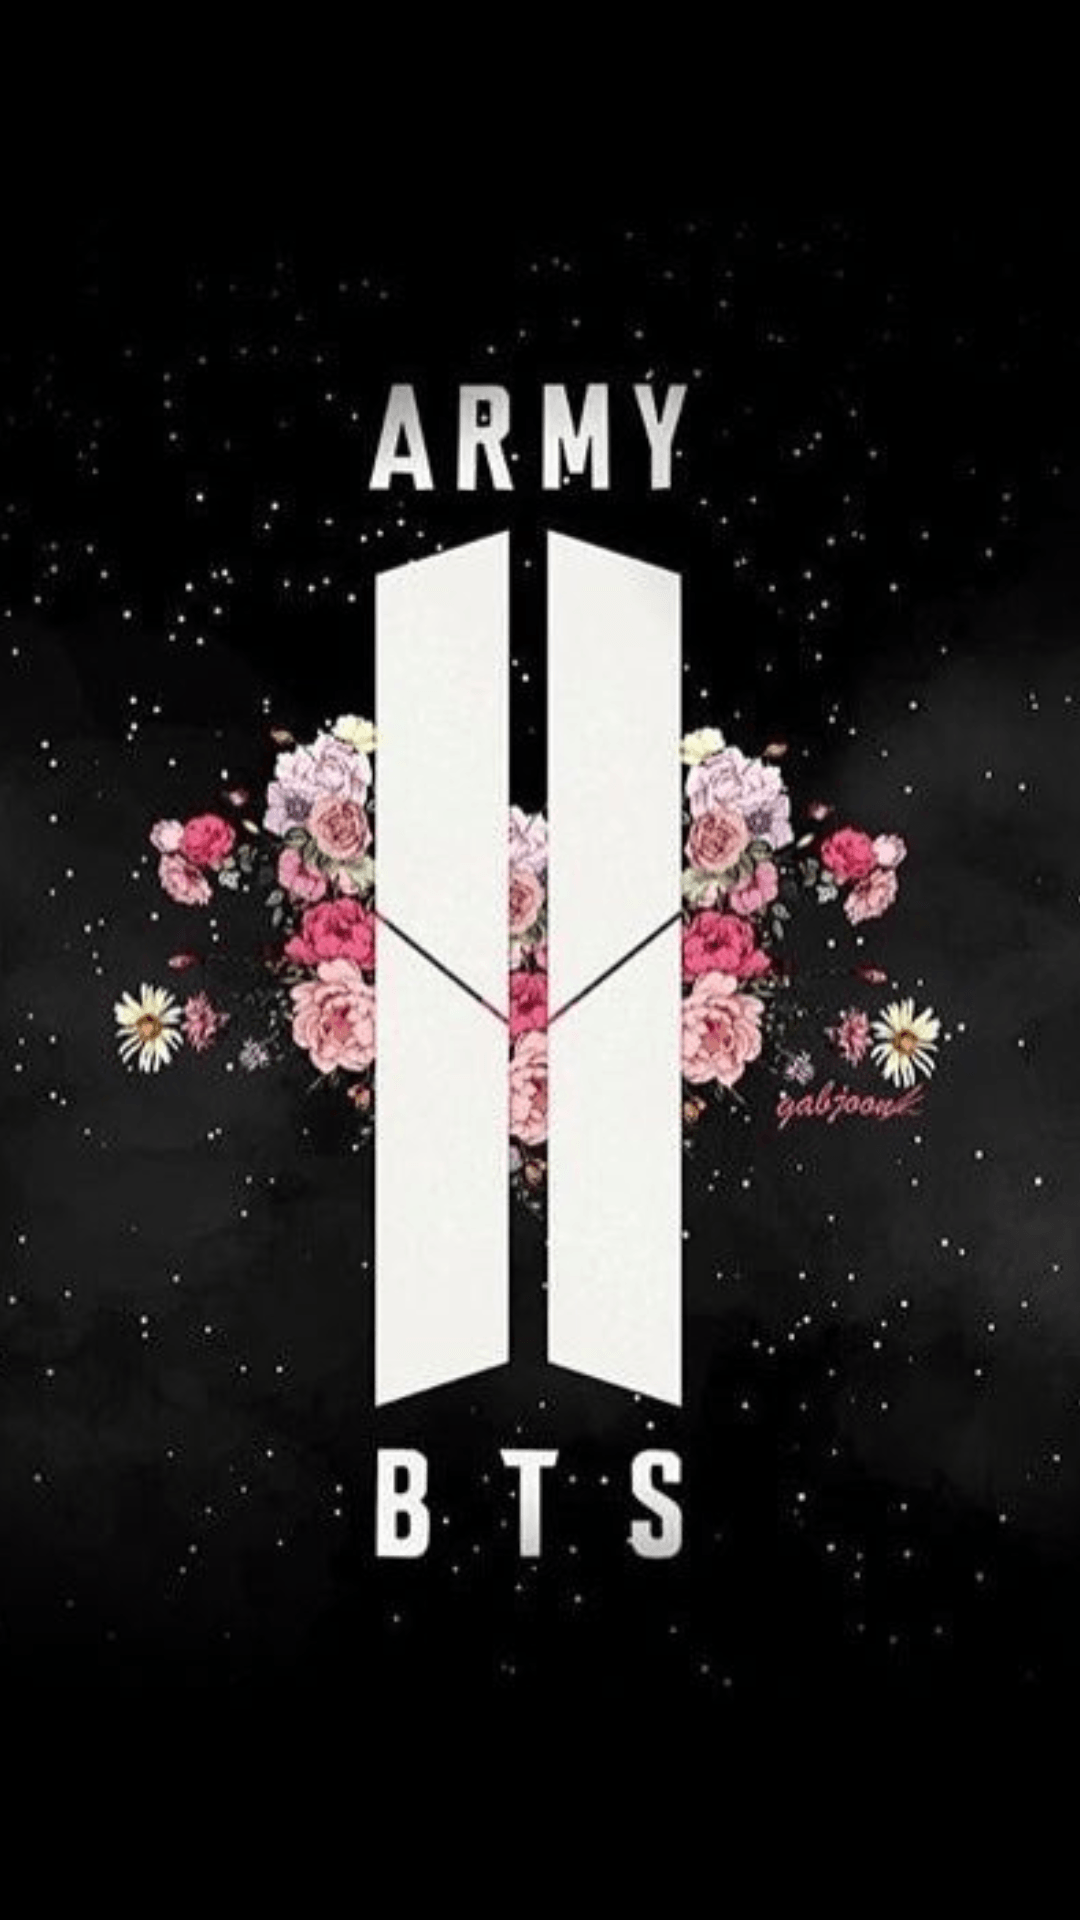 BTS Army Wallpapers - Top Những Hình Ảnh Đẹp